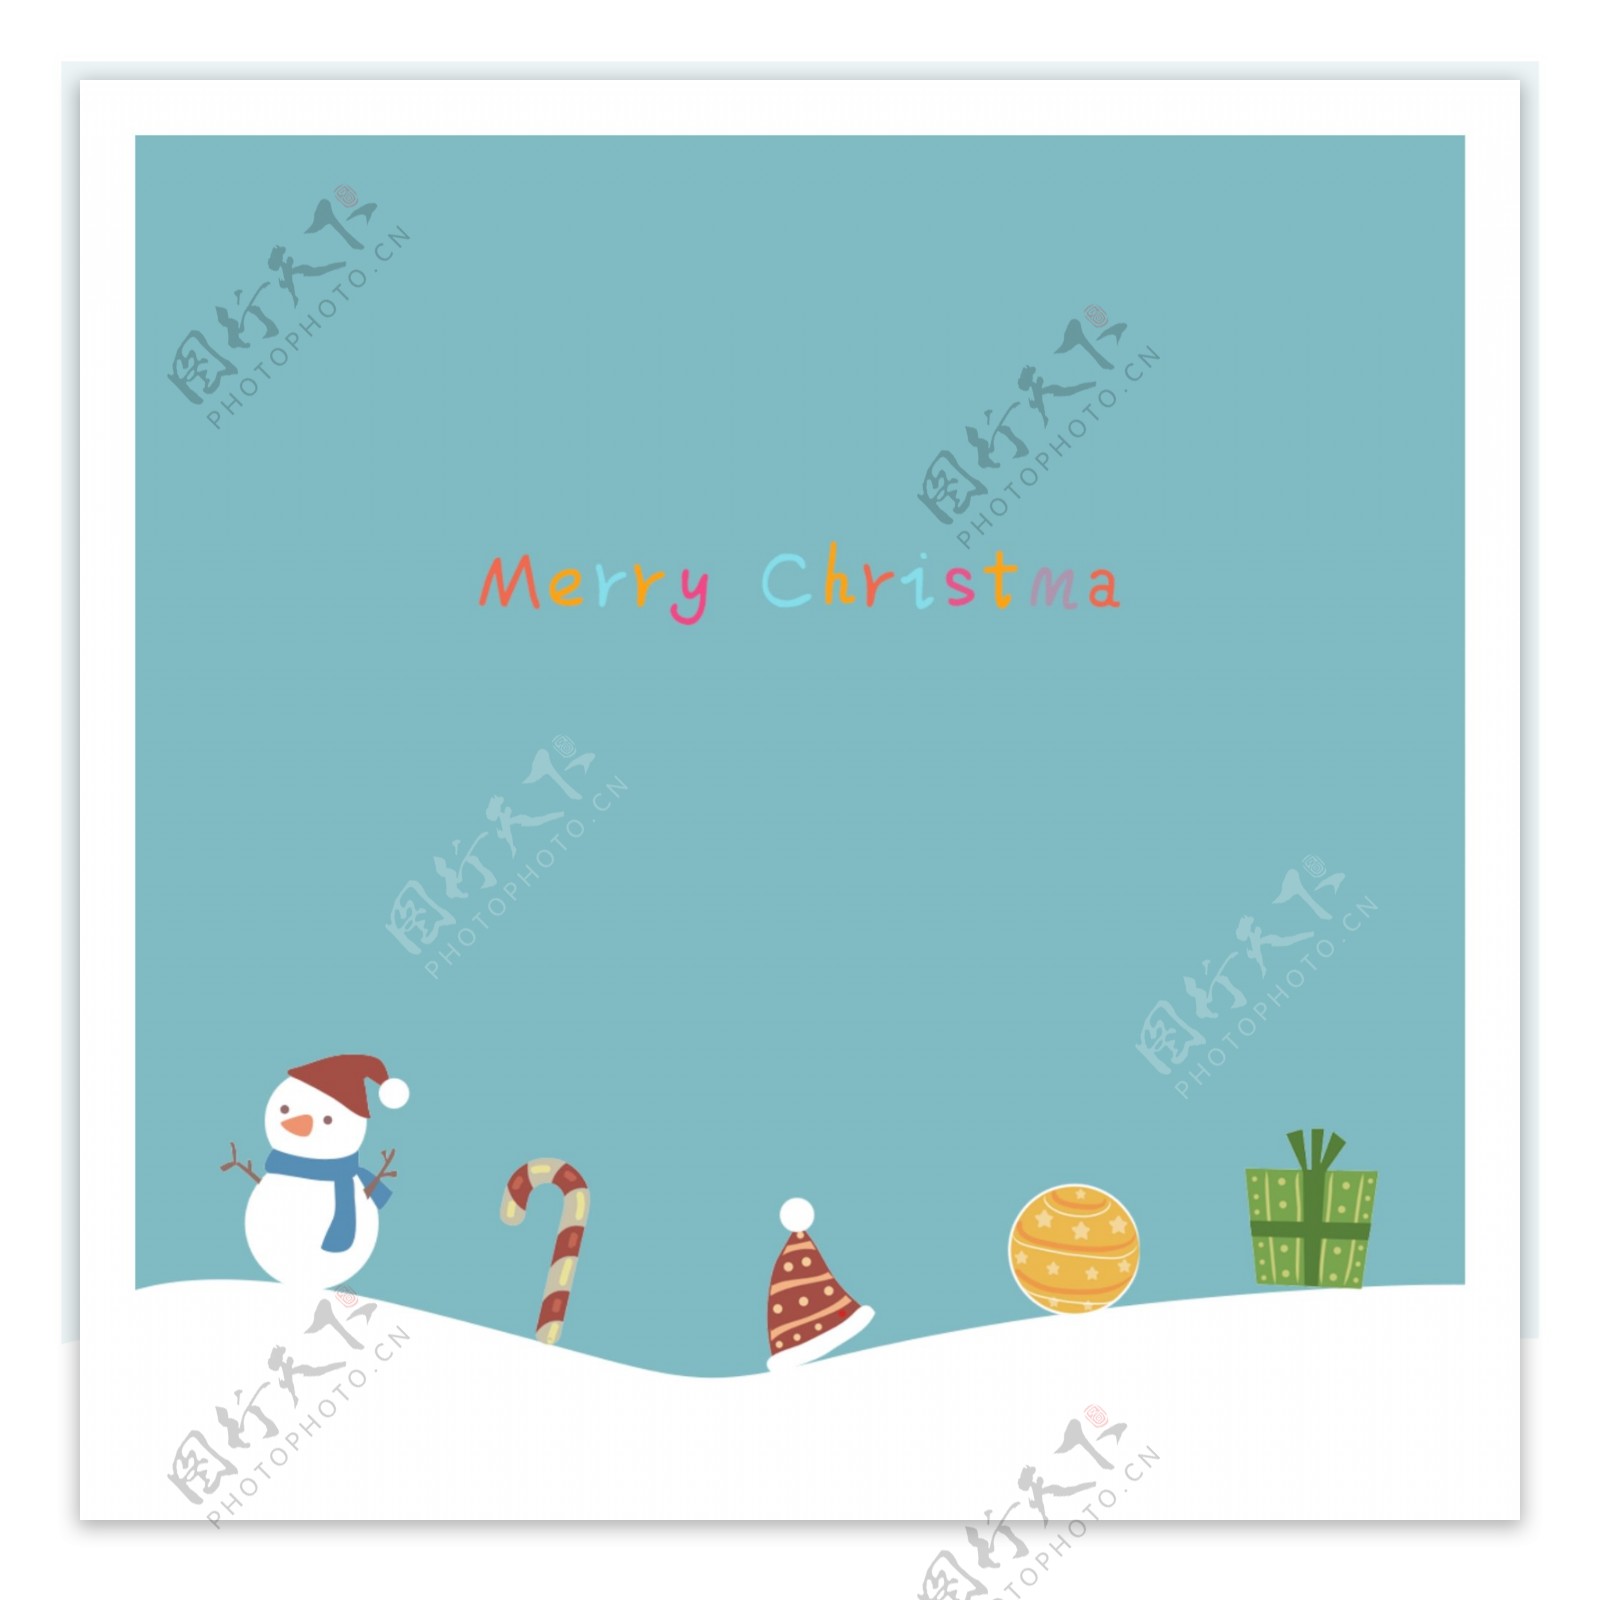 蓝色的简单雪人圣诞背景